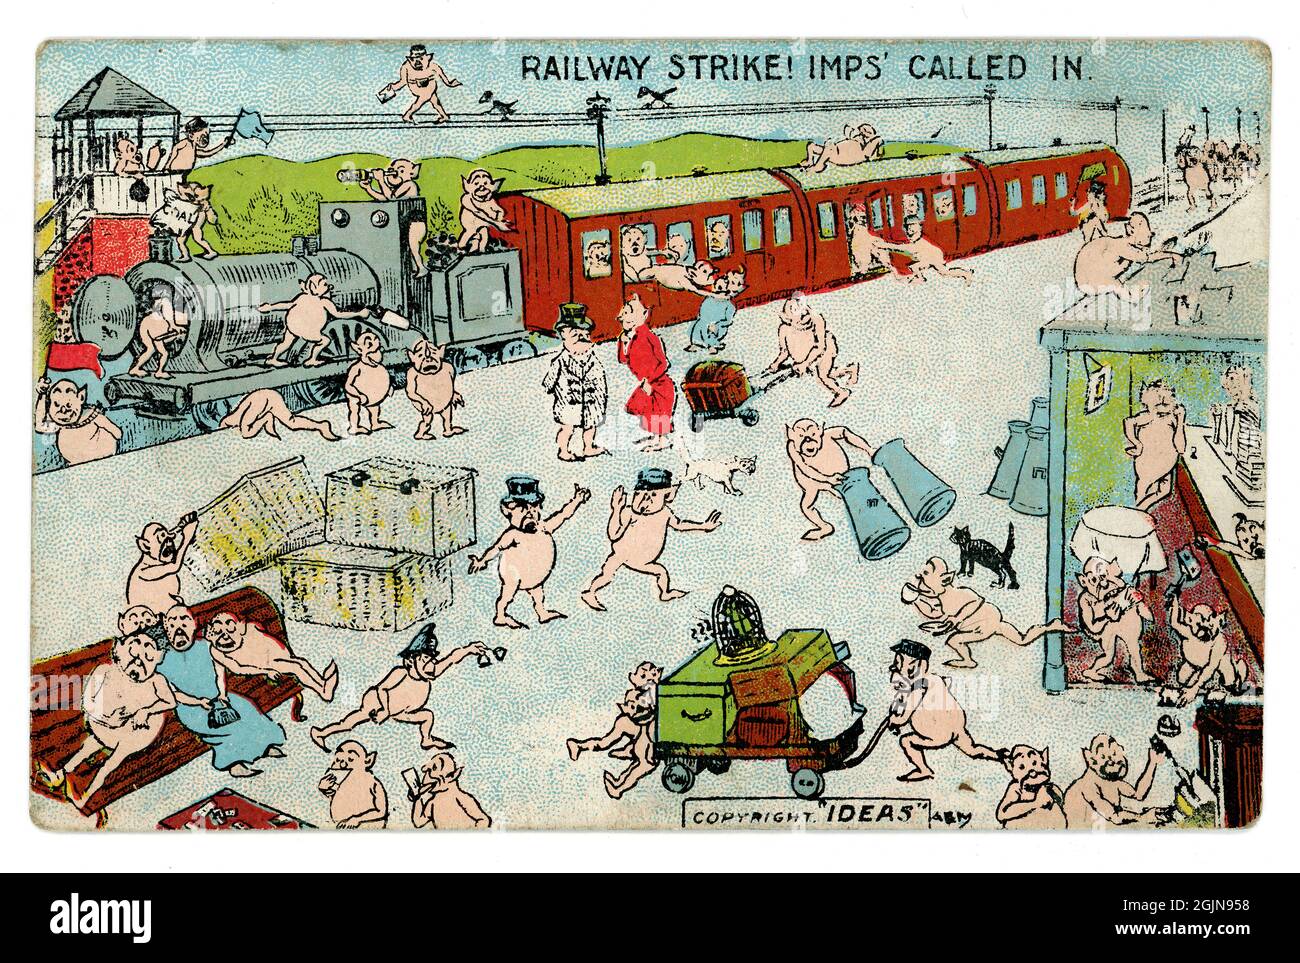 Original Comic-Postkarte aus dem frühen 20. Jahrhundert, „imps called in to help“, die während eines Eisenbahnstreiks Chaos auslöste, Dampflok-Schreibwaren auf der Plattform, während imps Chaos verursachen. 1908, GROSSBRITANNIEN Stockfoto